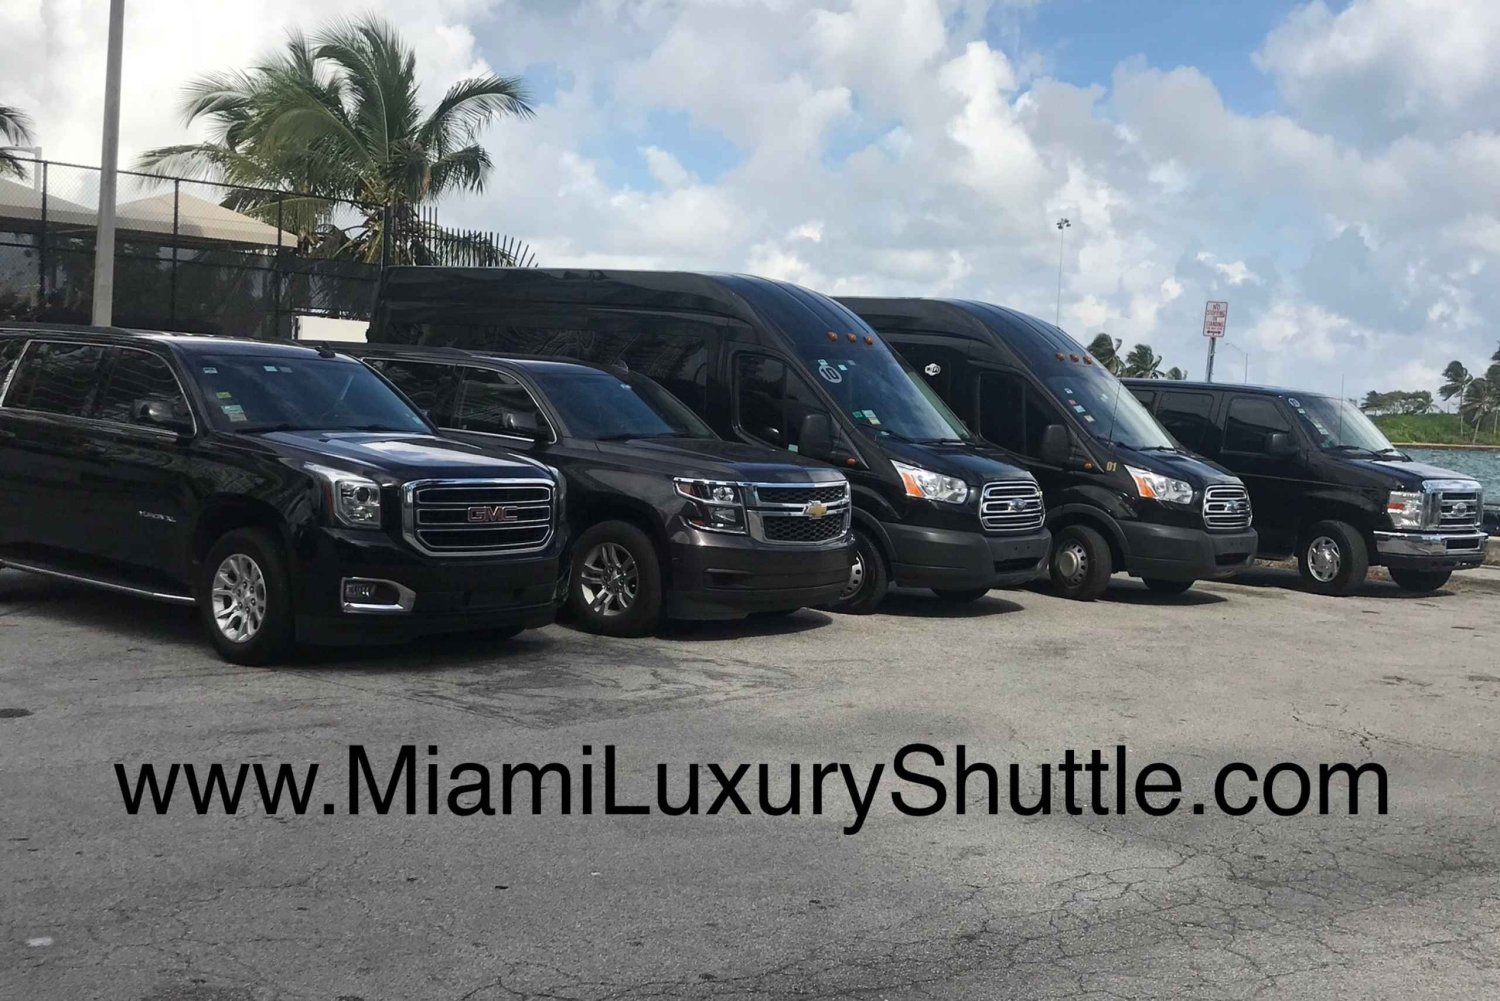 Transfer z portu w Miami na lotnisko w Miami lub do hotelu w Miami